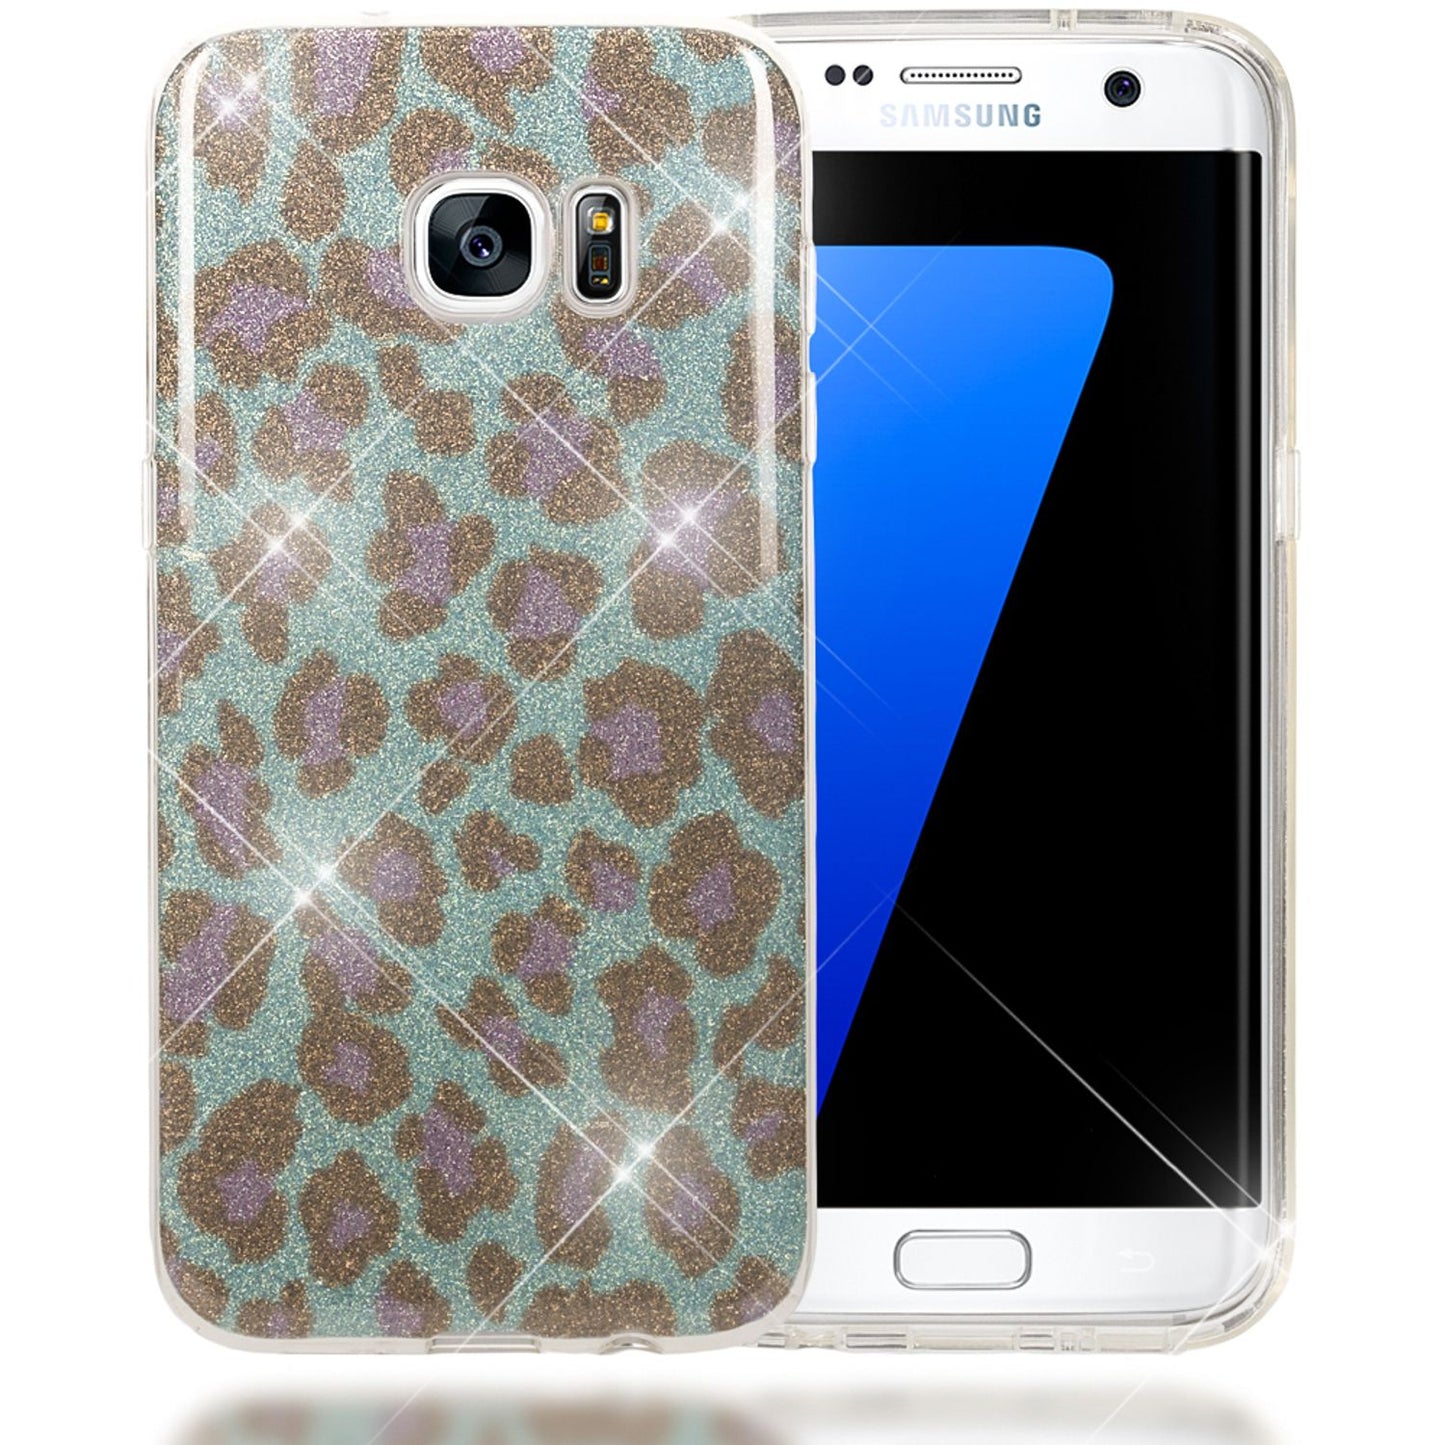 NALIA Handy Hülle für Samsung S7 Edge, Slim Schutz Case Cover Tasche Bumper Etui